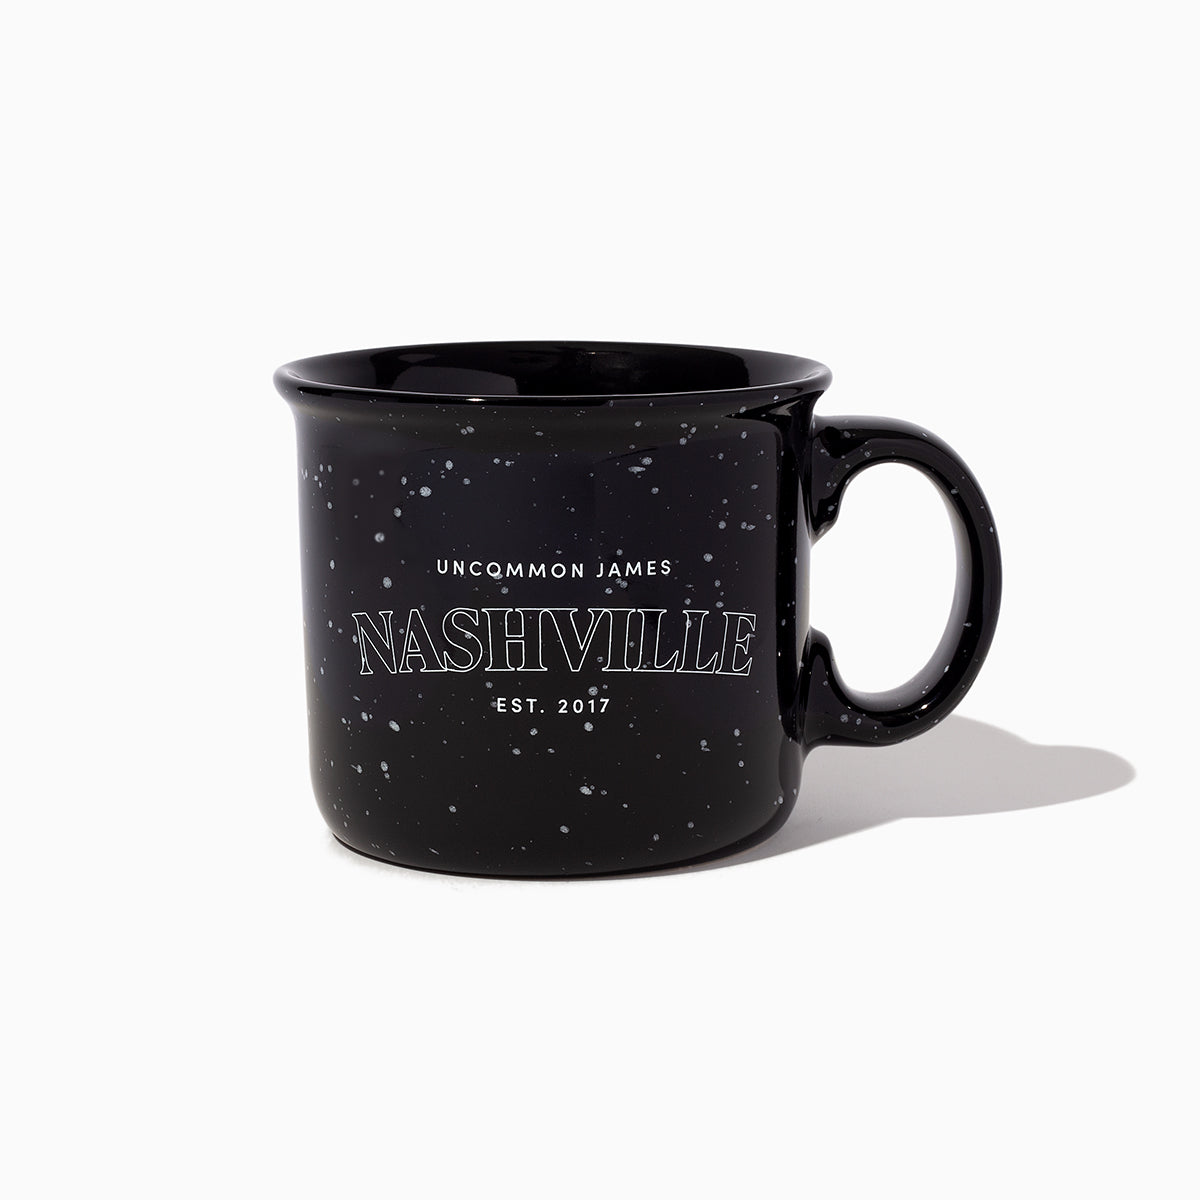 Nashville Mug | Black | Product Image | Uncommon James Home